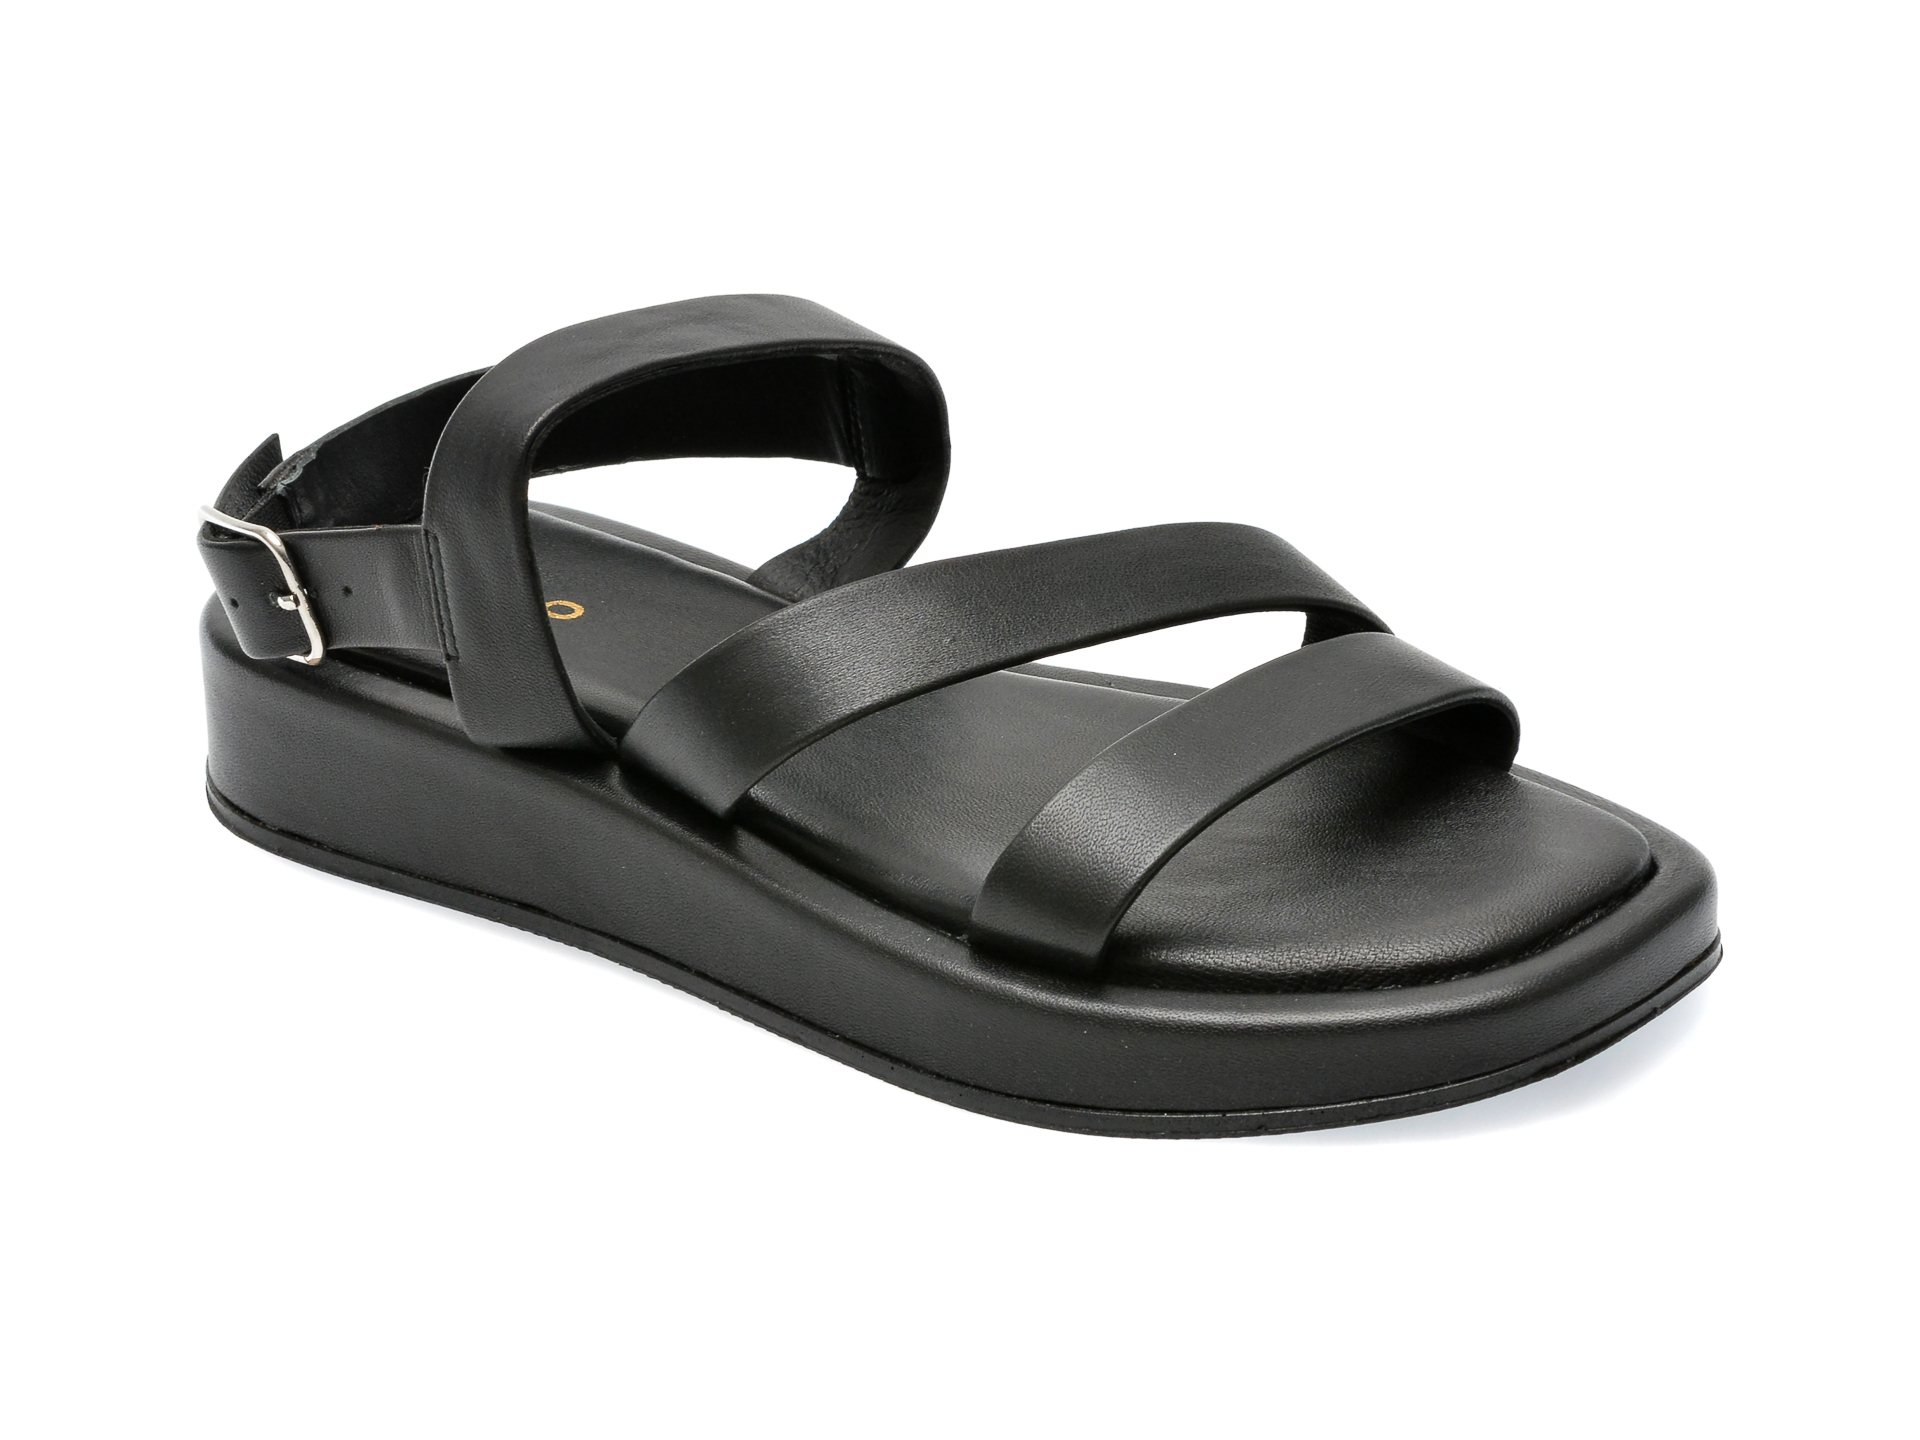 Sandale ALDO negre, RIMSKY001, din piele naturala